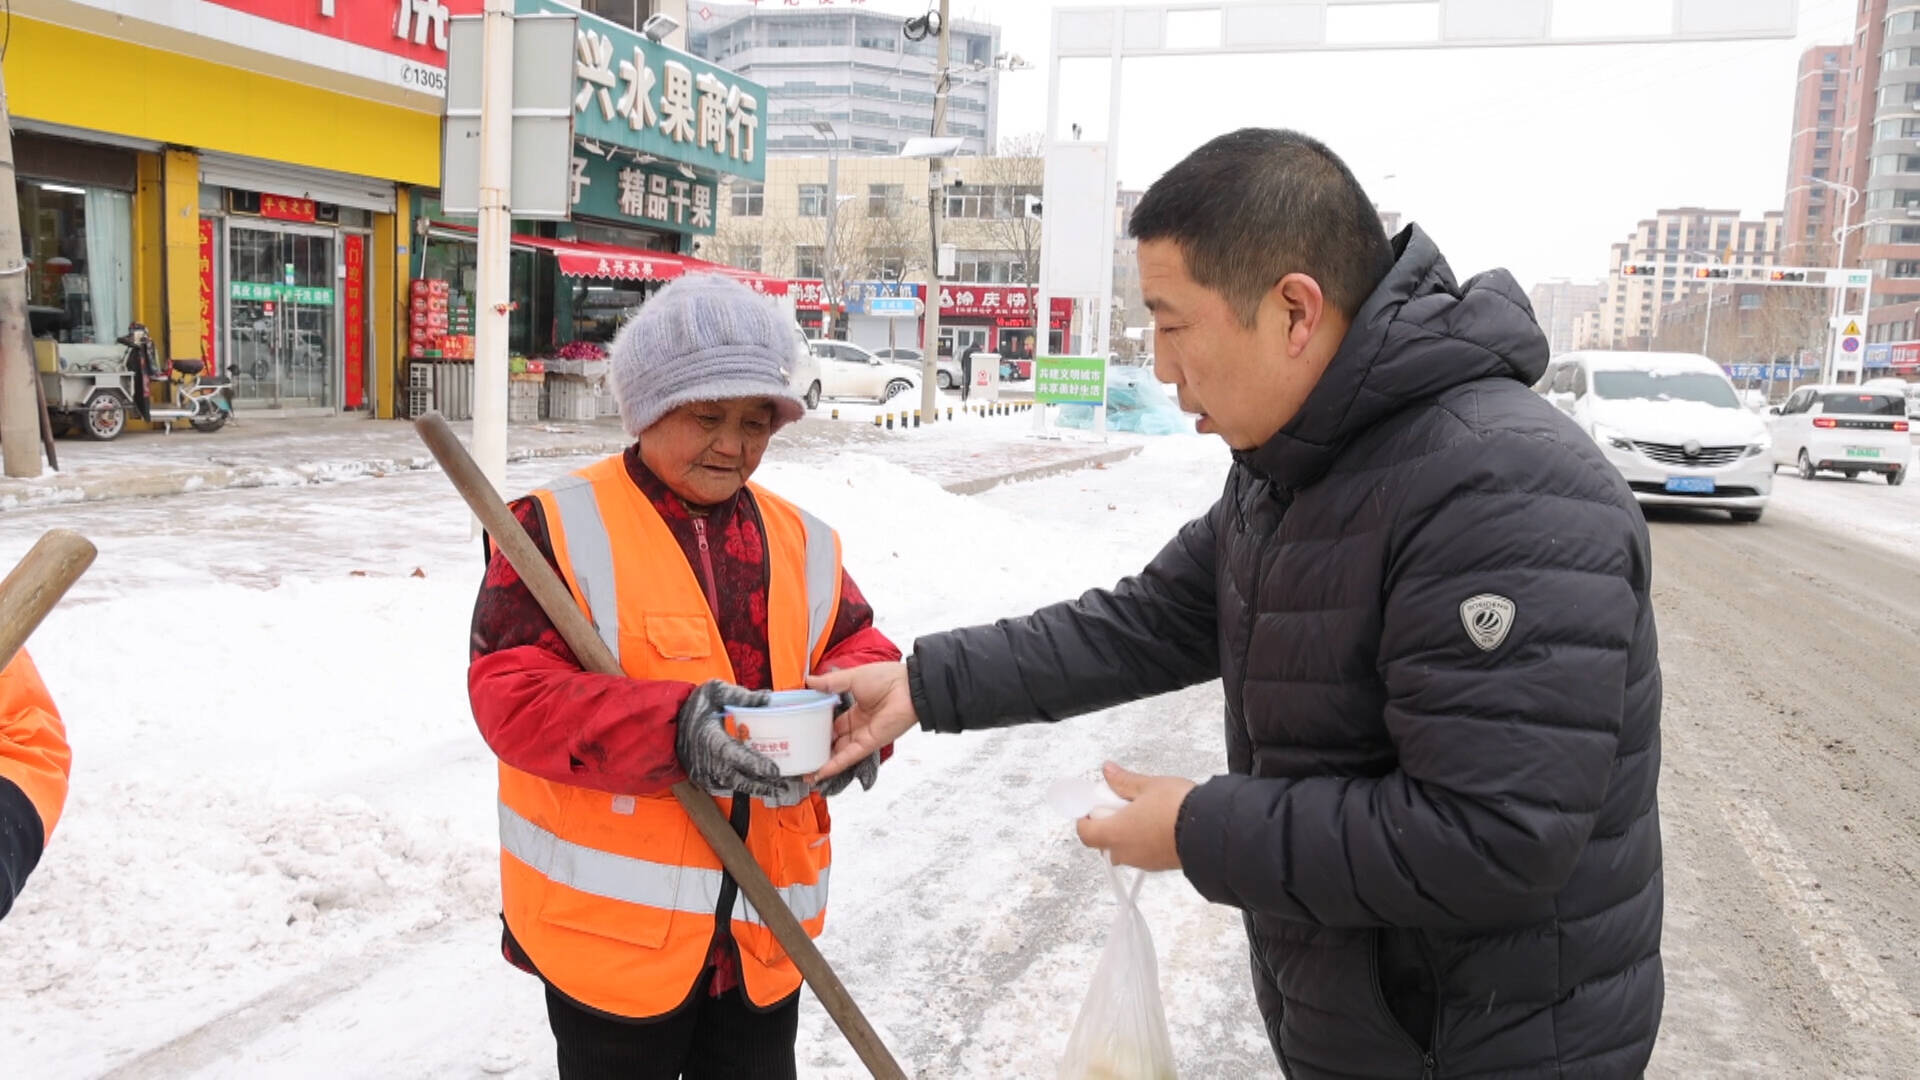 夏津：雪后爱心企业免费送餐一线工作人员 传递温暖感人心